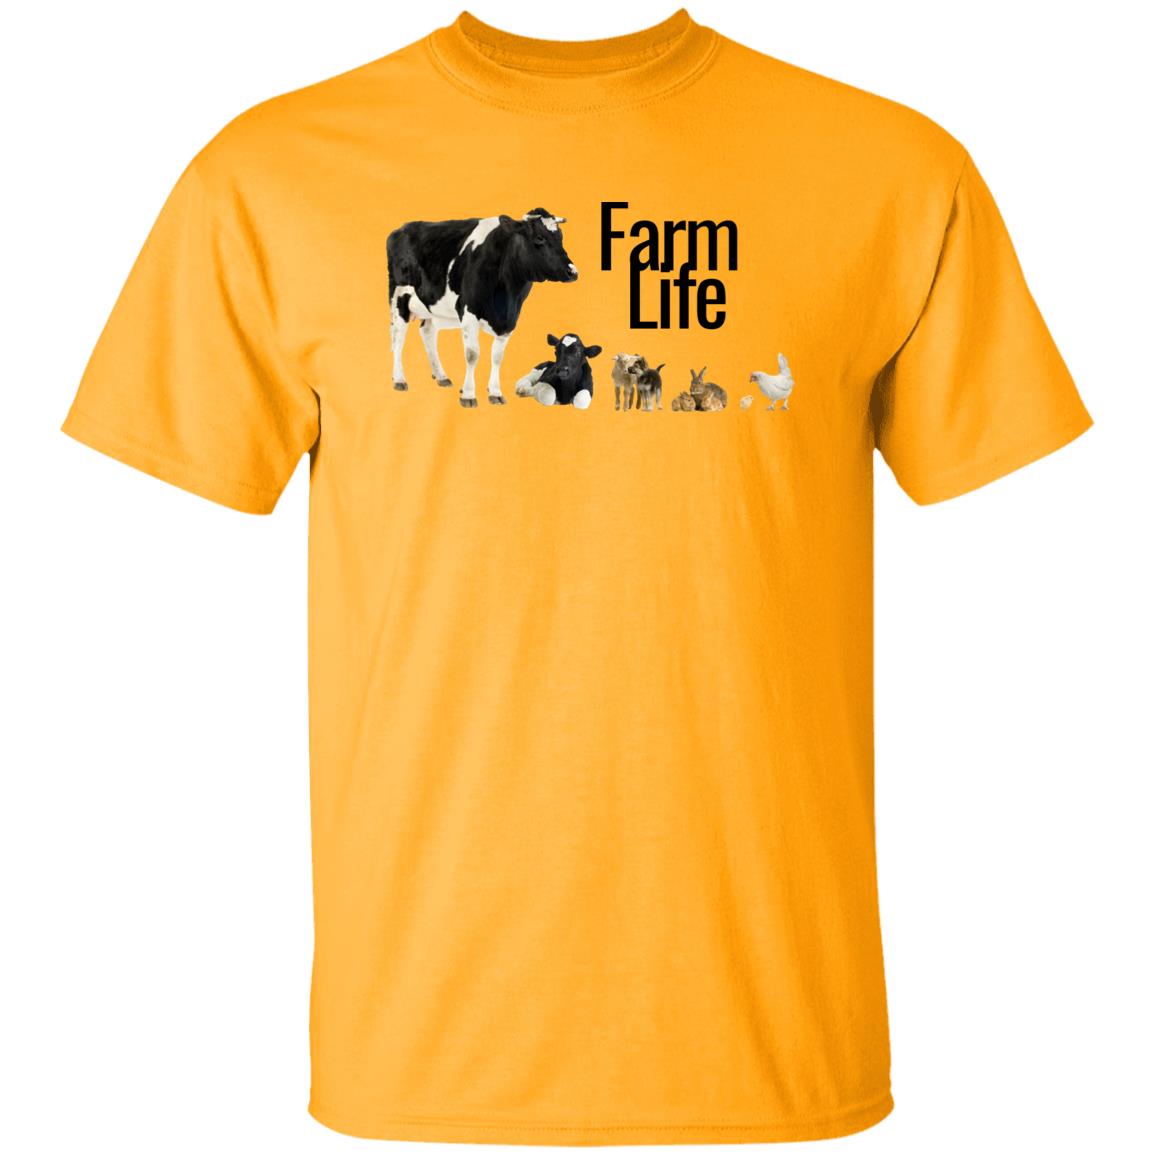 Farm Life (Black Print) G500 5.3 oz. T-Shirt